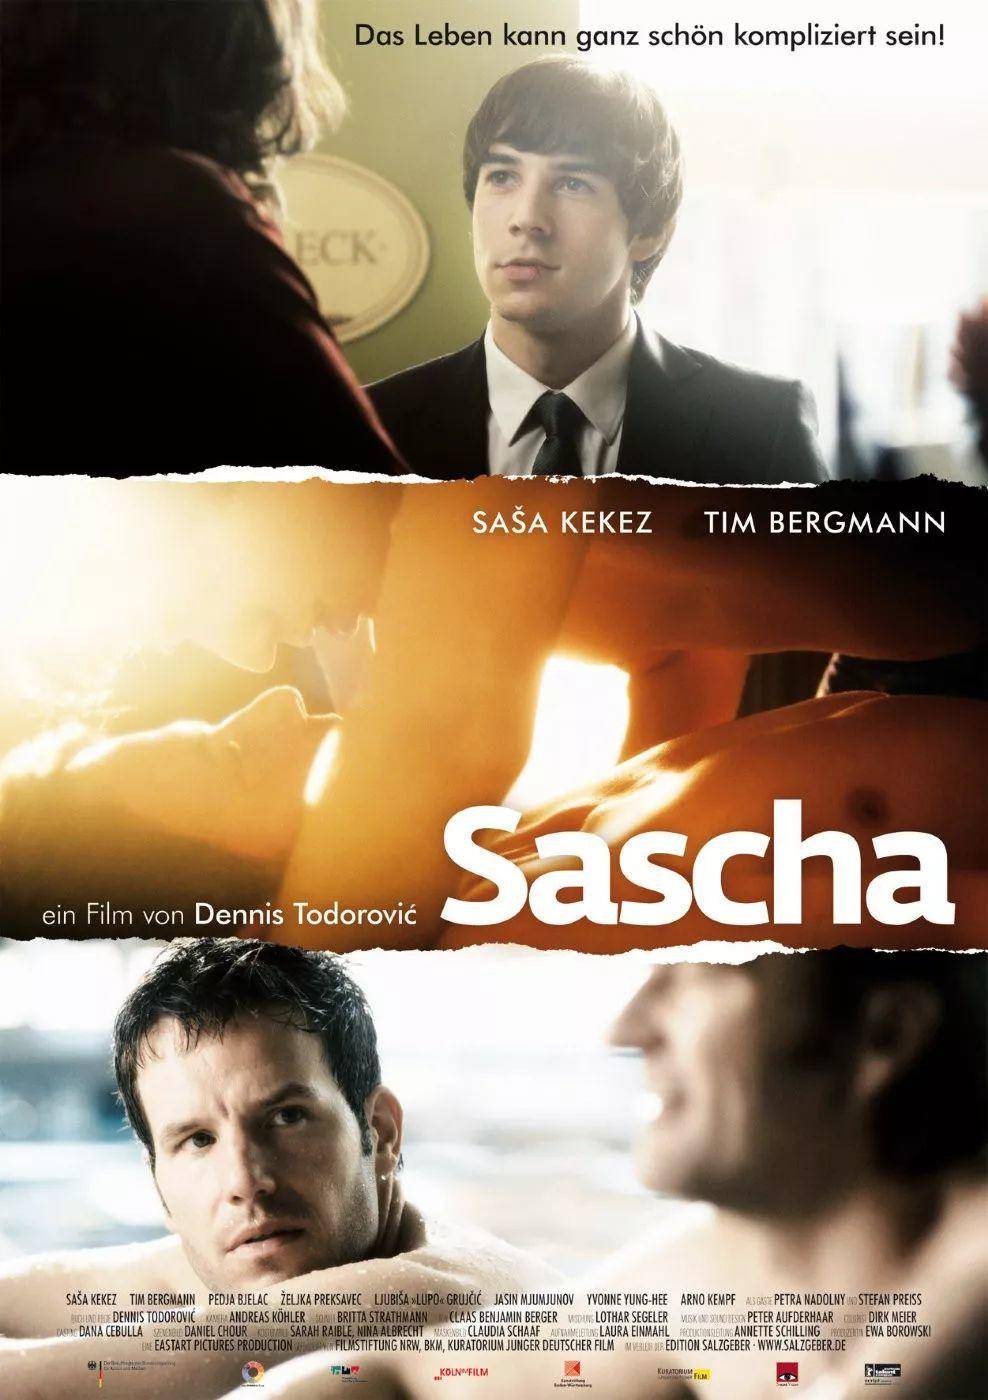 德国同性恋电影《萨沙》